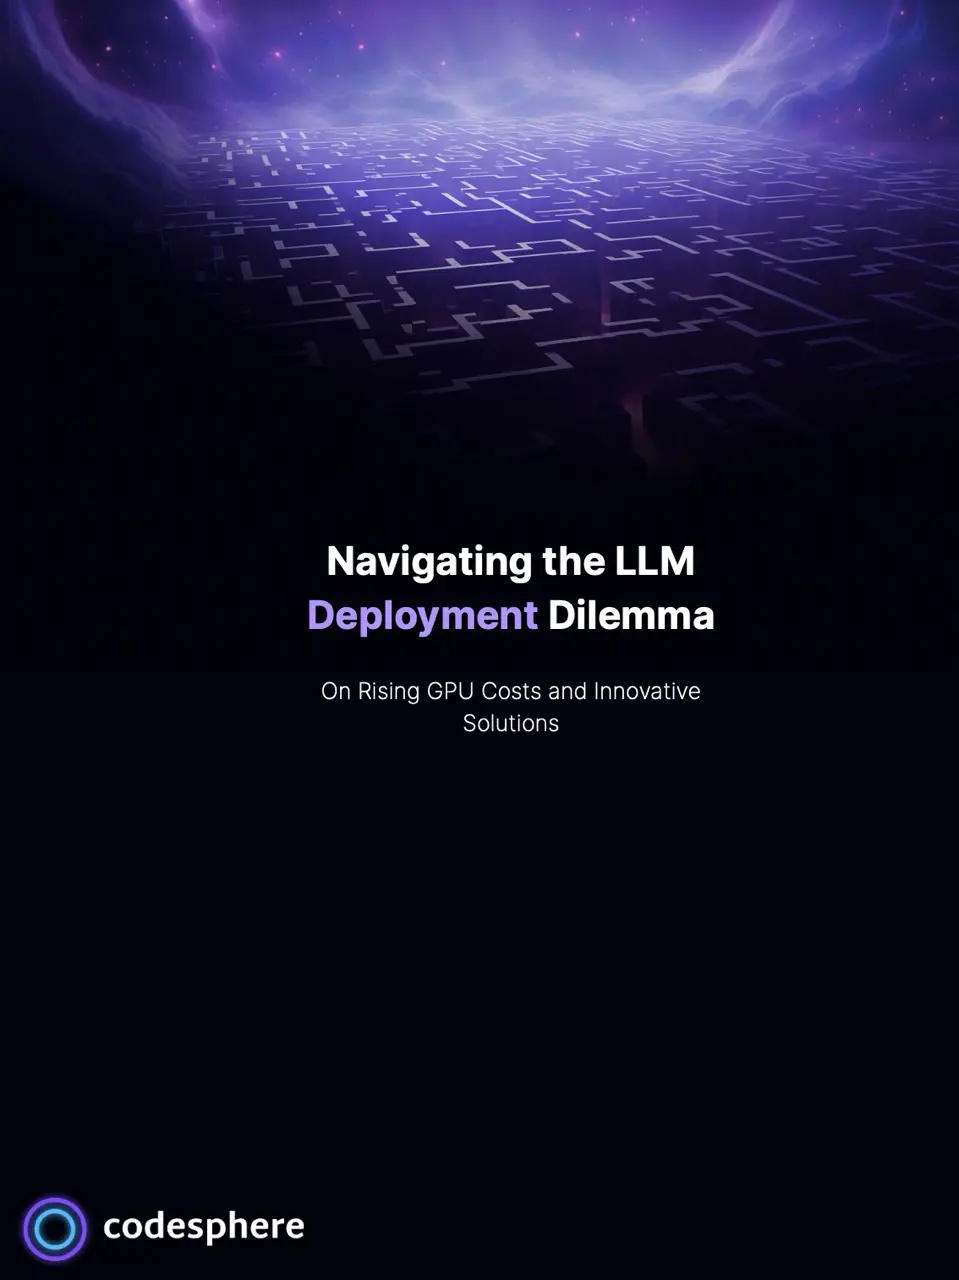 Navigating the LLM deployment dilemma